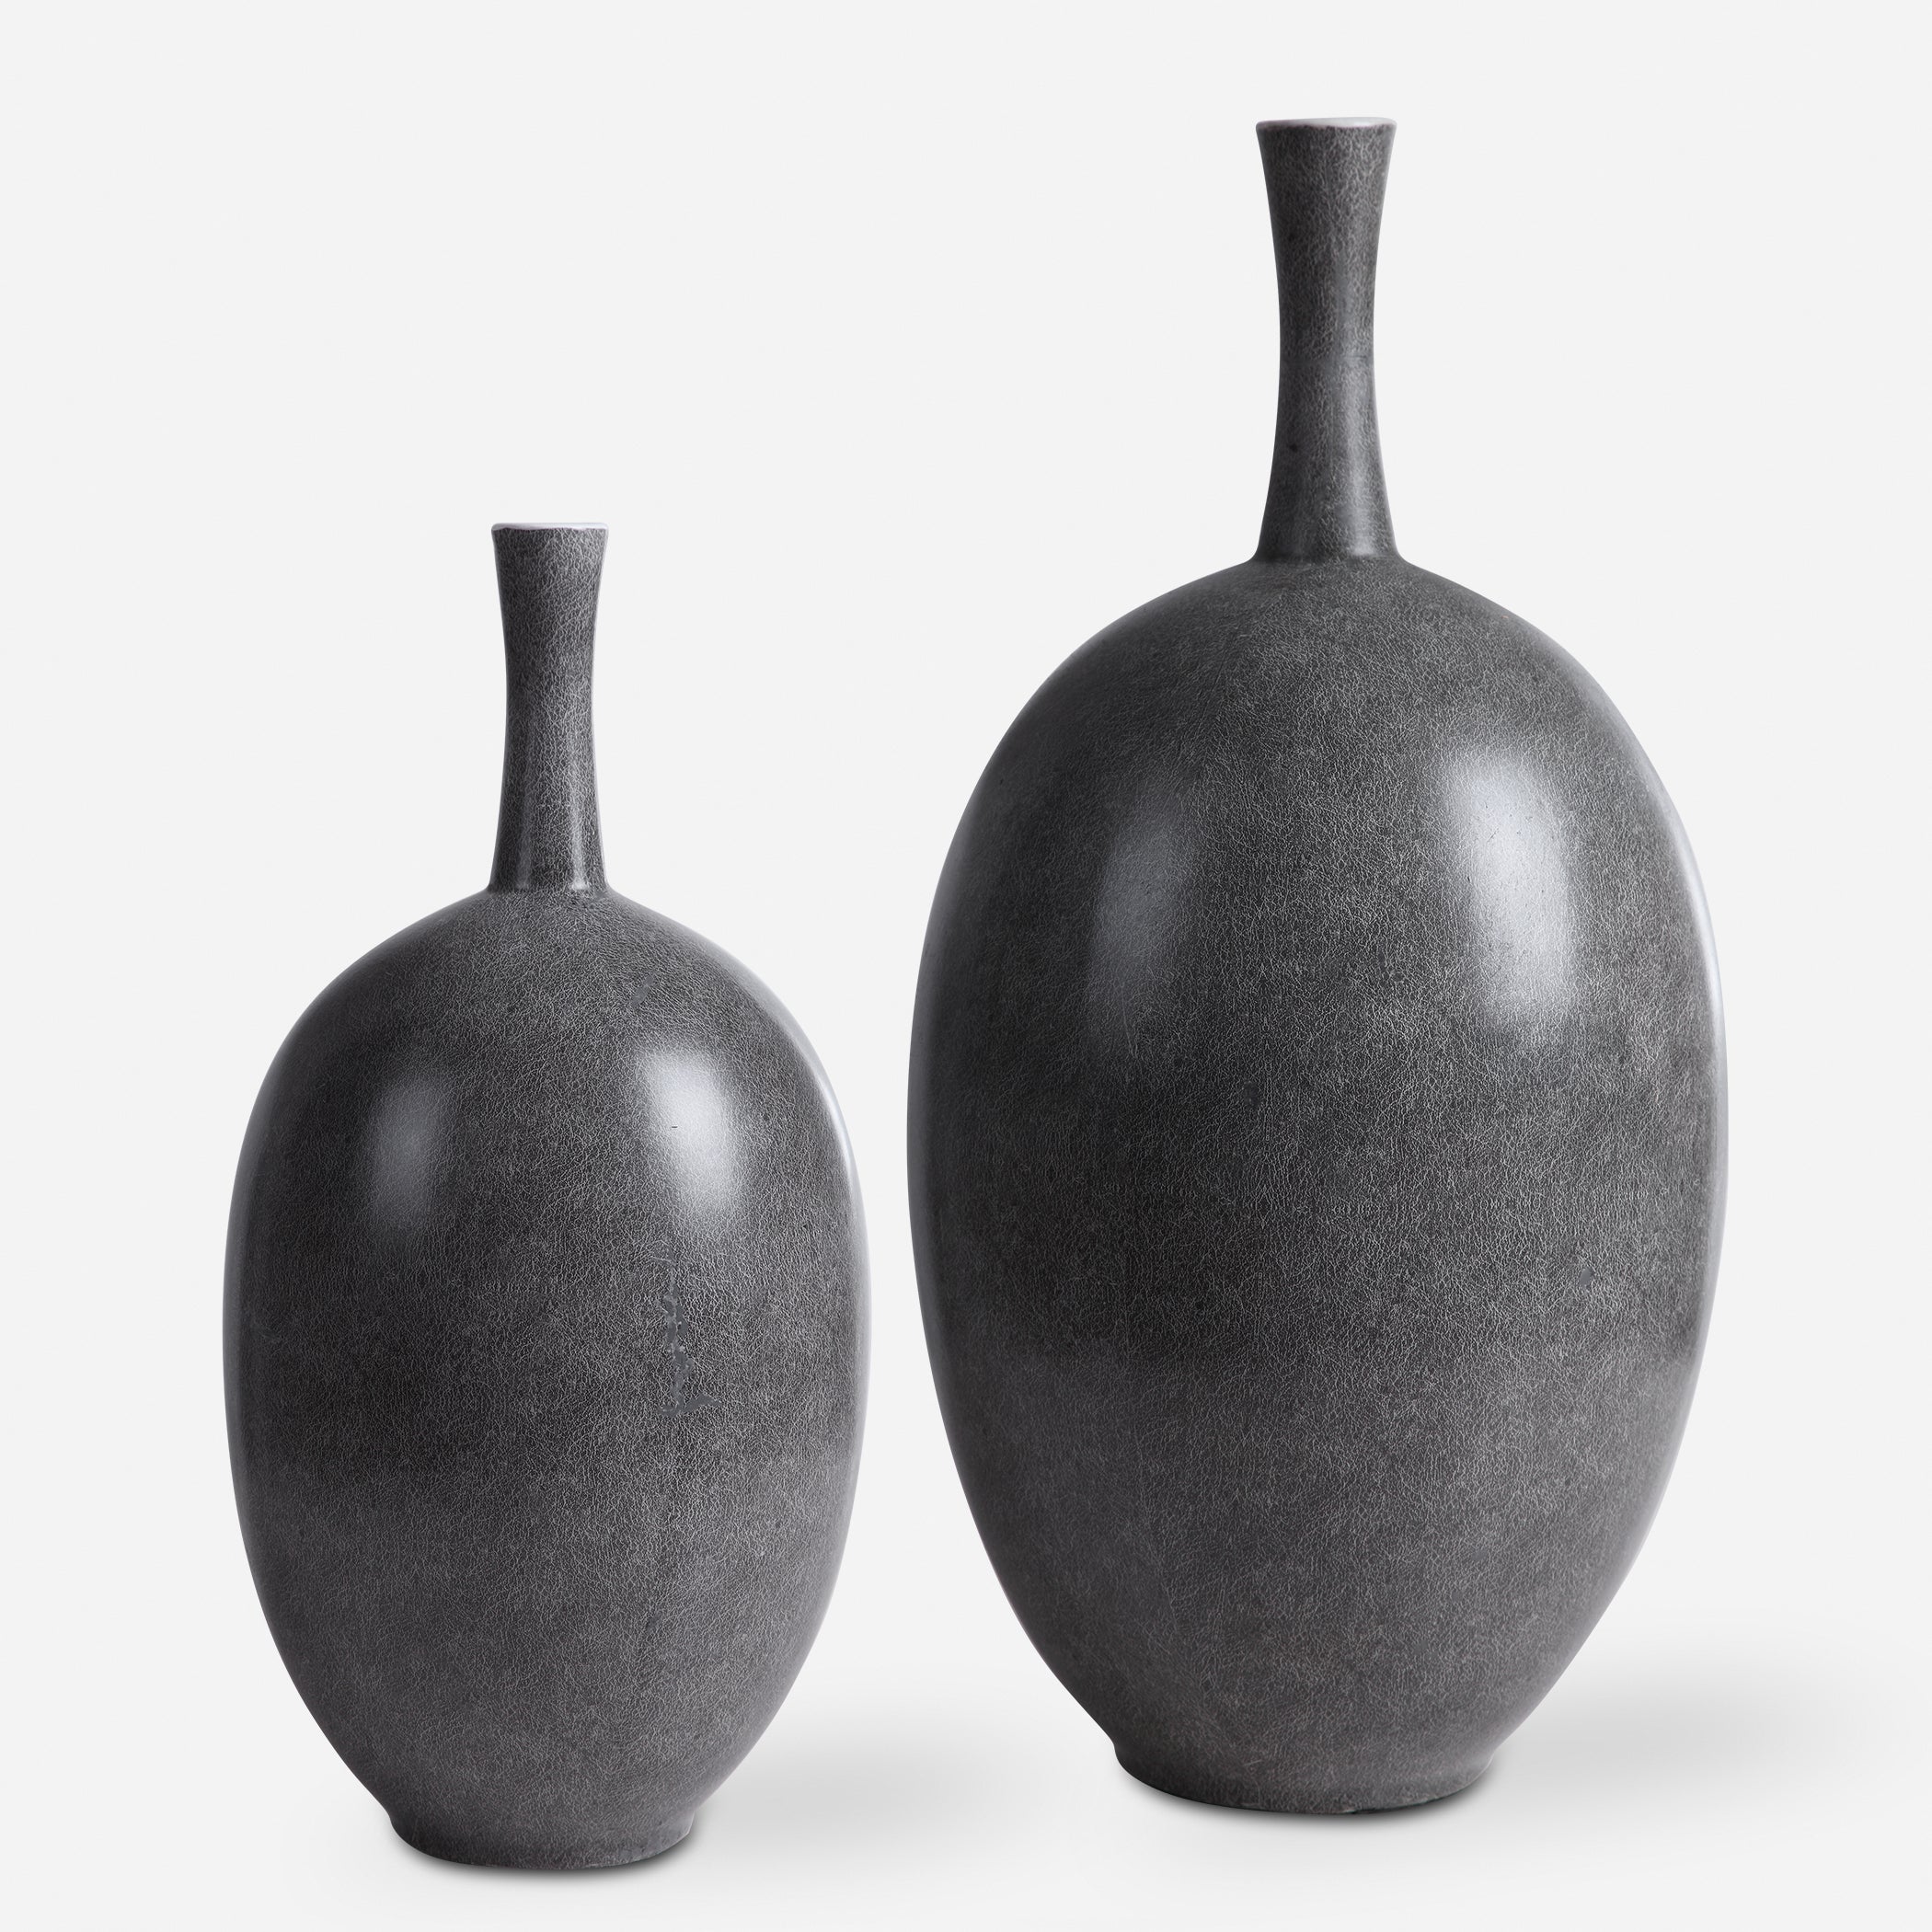 Uttermost Riordan Vases Urns & Finials Vases Urns & Finials Uttermost   